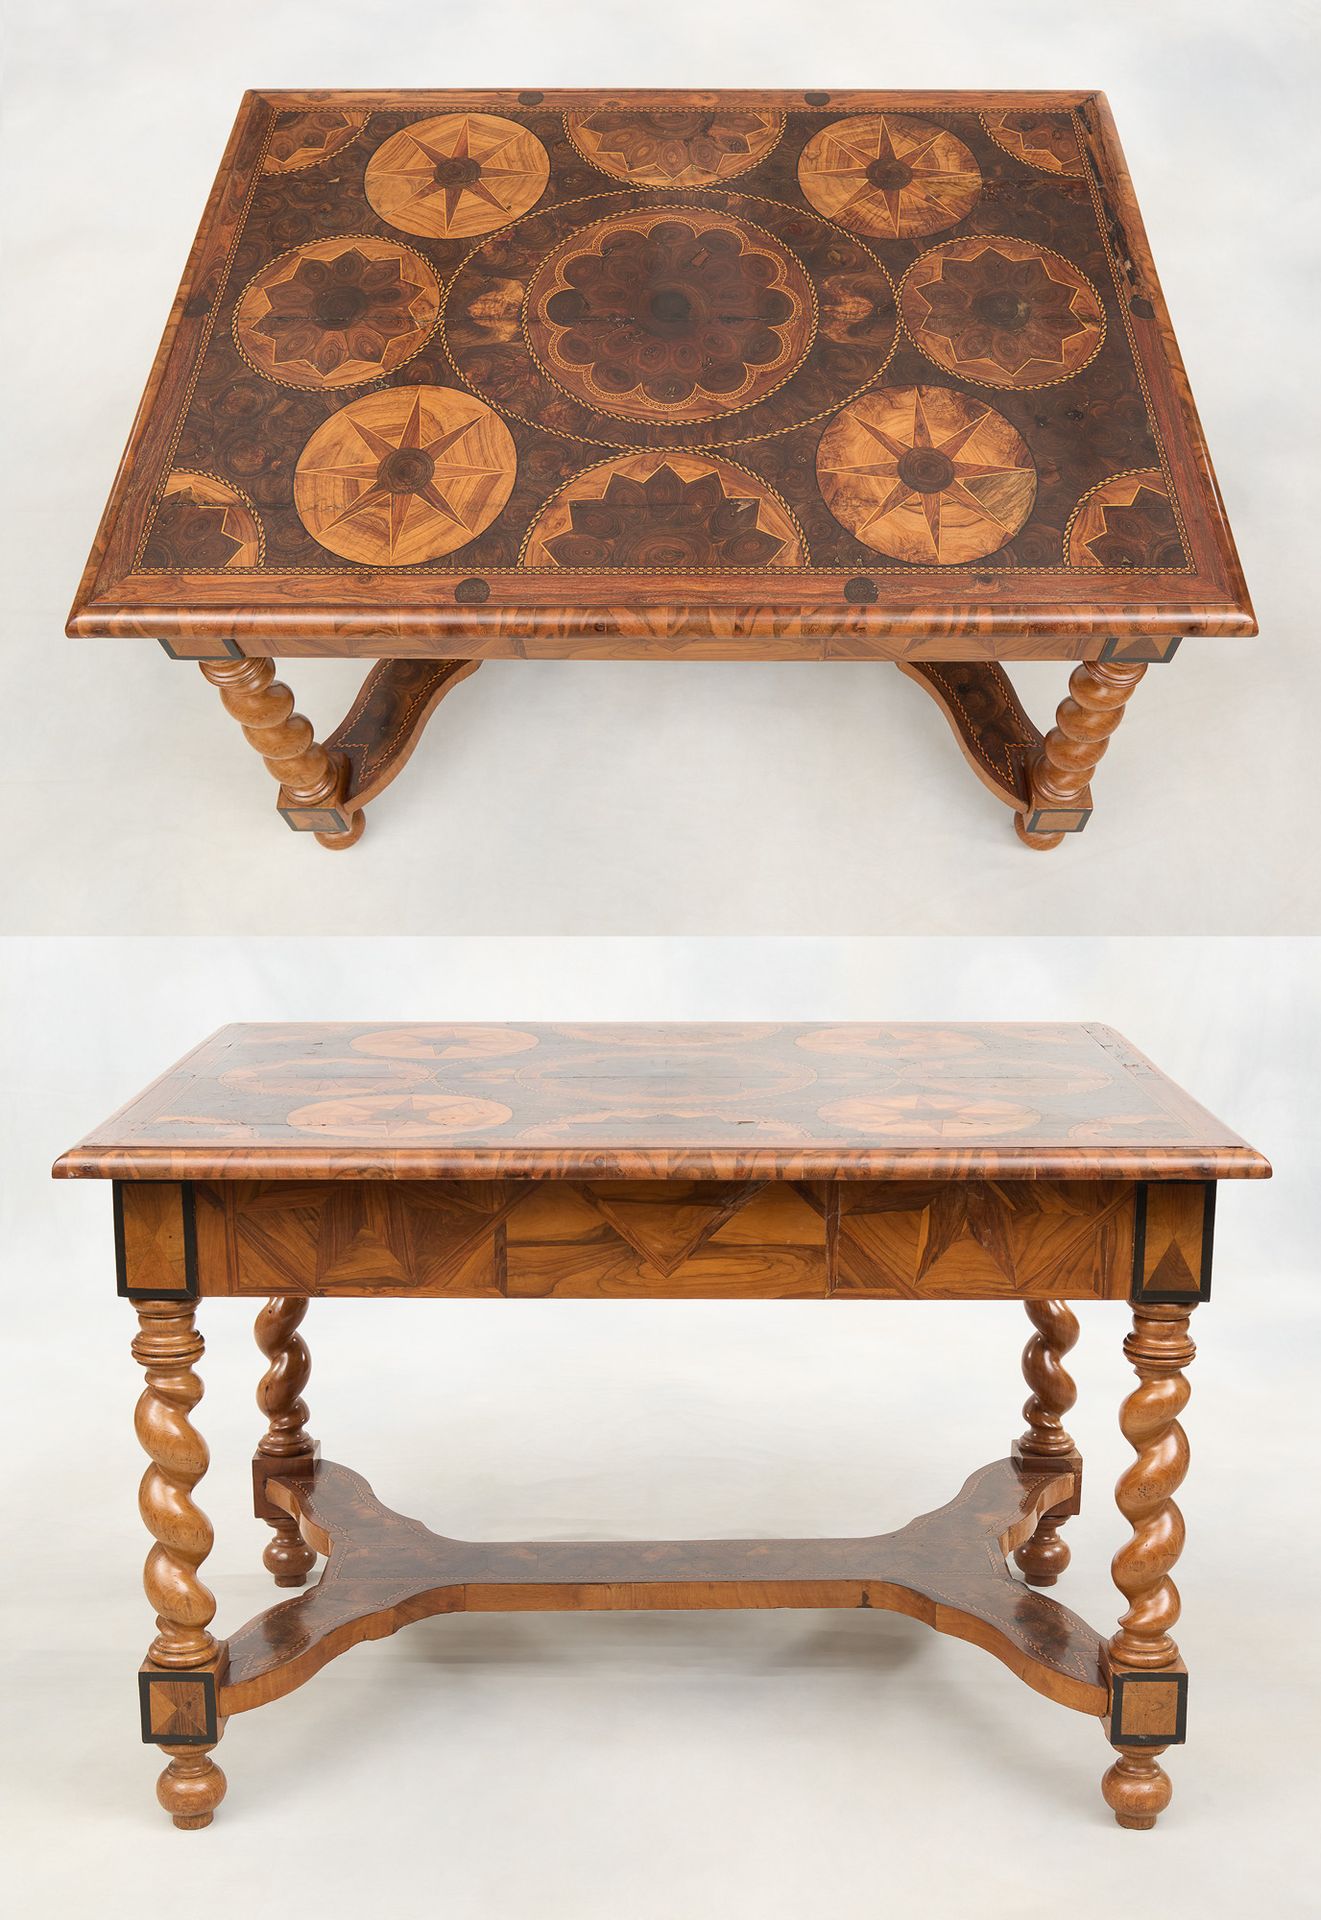 Travail hollandais 18e. 家具：用珍贵的木材，包括紫檀木、胡桃木、乌木和柠檬木制作的贴面和几何花纹镶嵌桌，带支架的扭曲腿。

(有待恢复)&hellip;